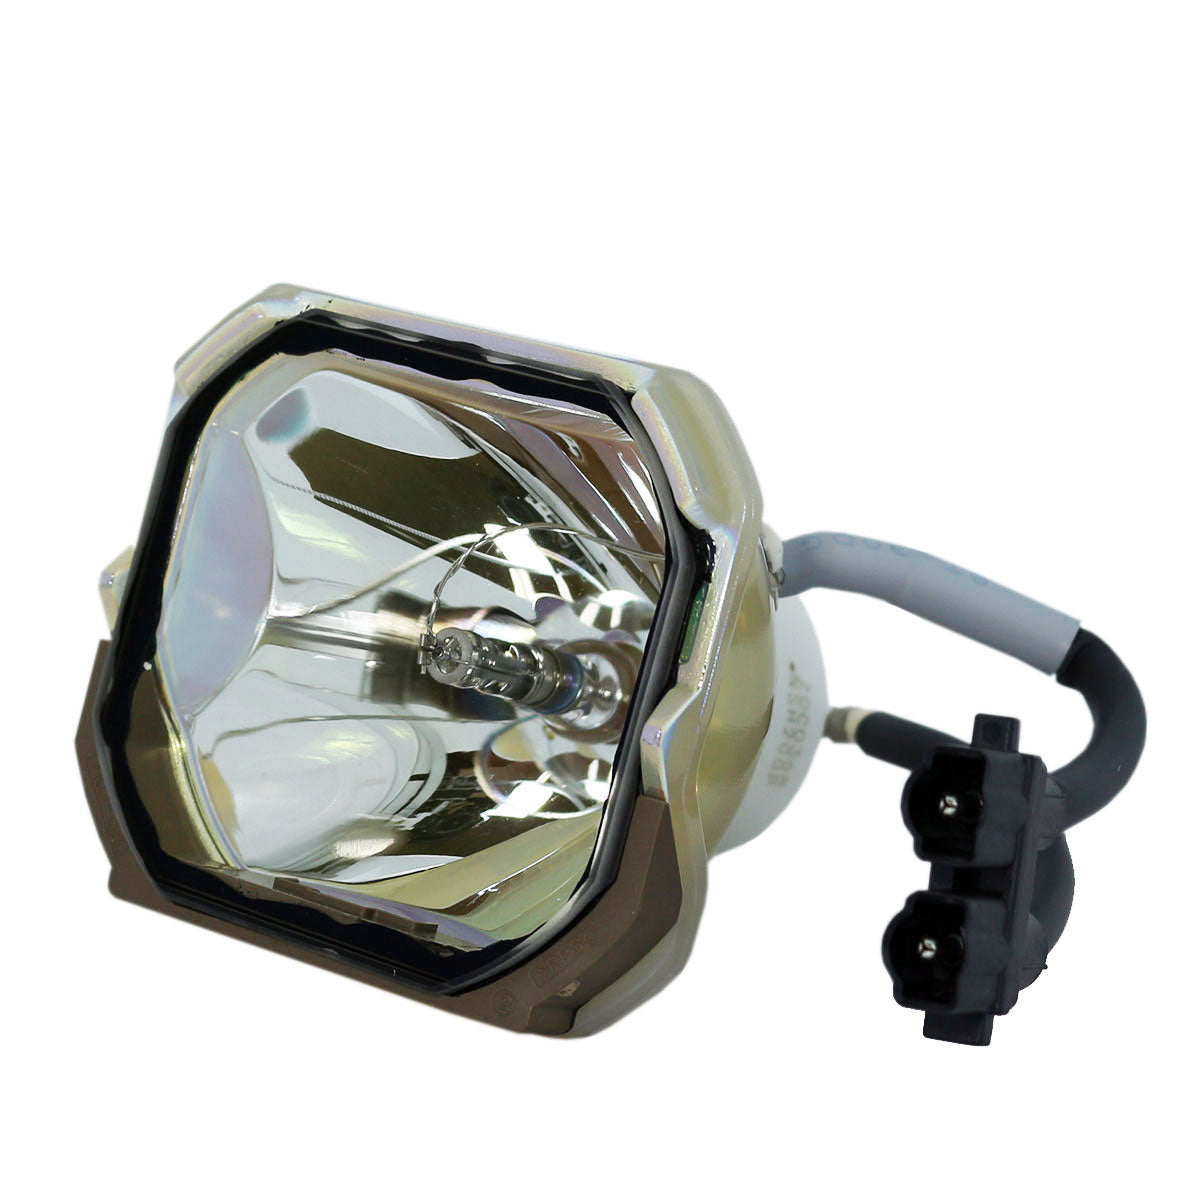 3M 78-6969-9464-5 Ushio Projector Bare Lamp